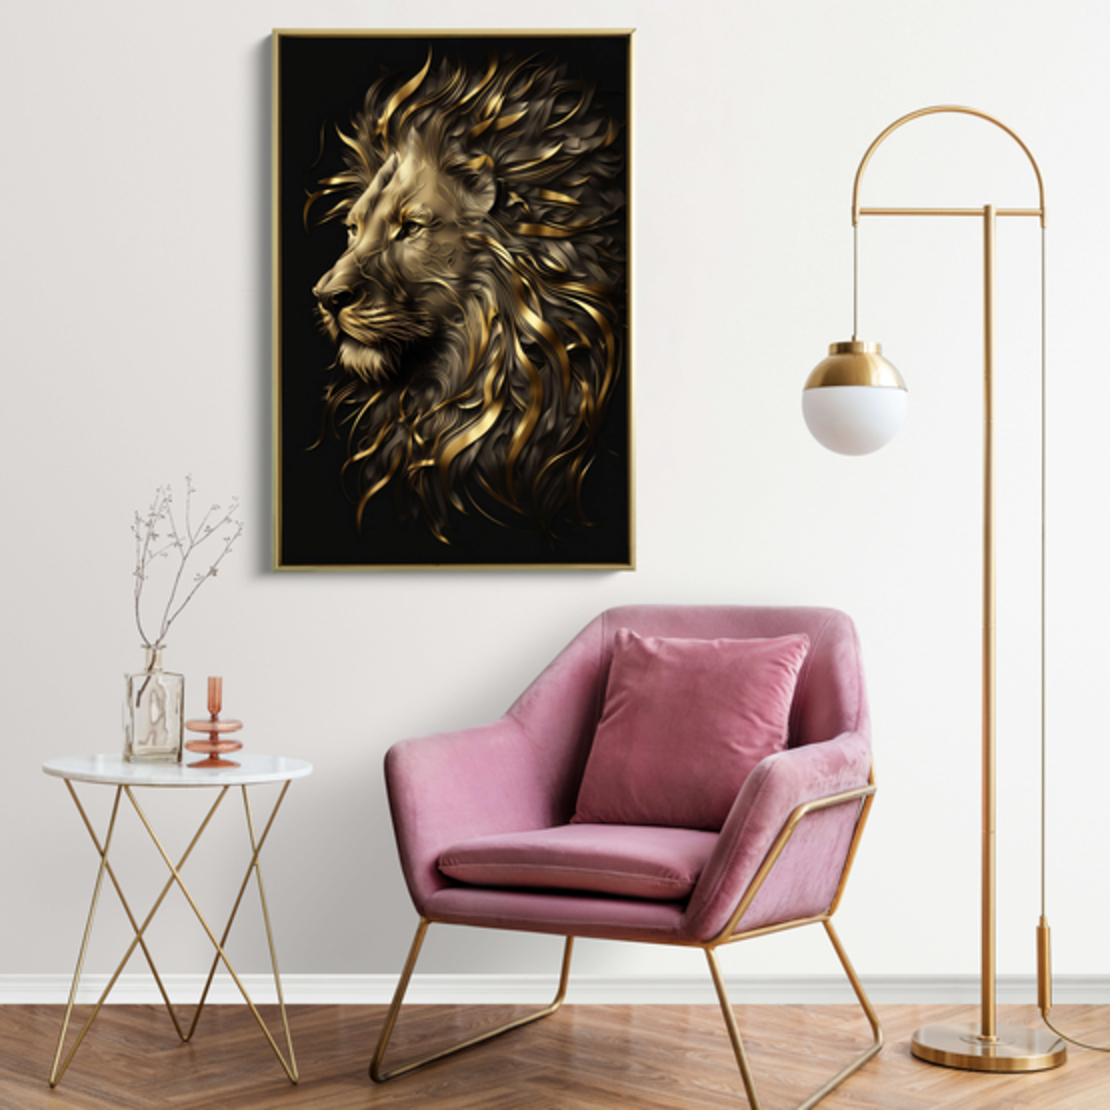 תמונה של אריה מוזהב בתלת מימד דגם 230458 בקנבס או בזכוכית